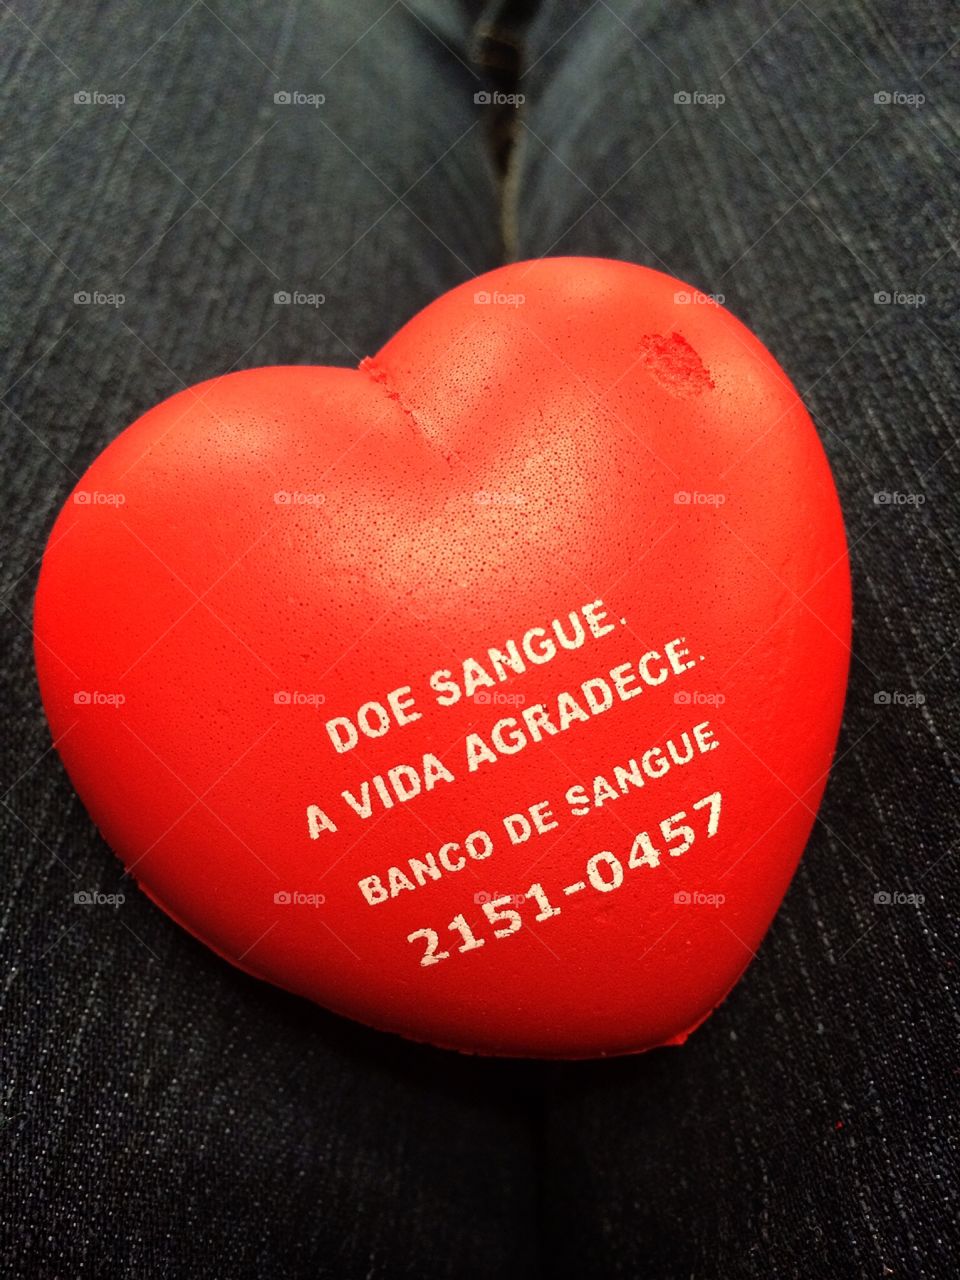 Um coração vermelho da campanha de doadores de sangue do Hospital Israelita Albert Einstein - São Paulo, Brasil